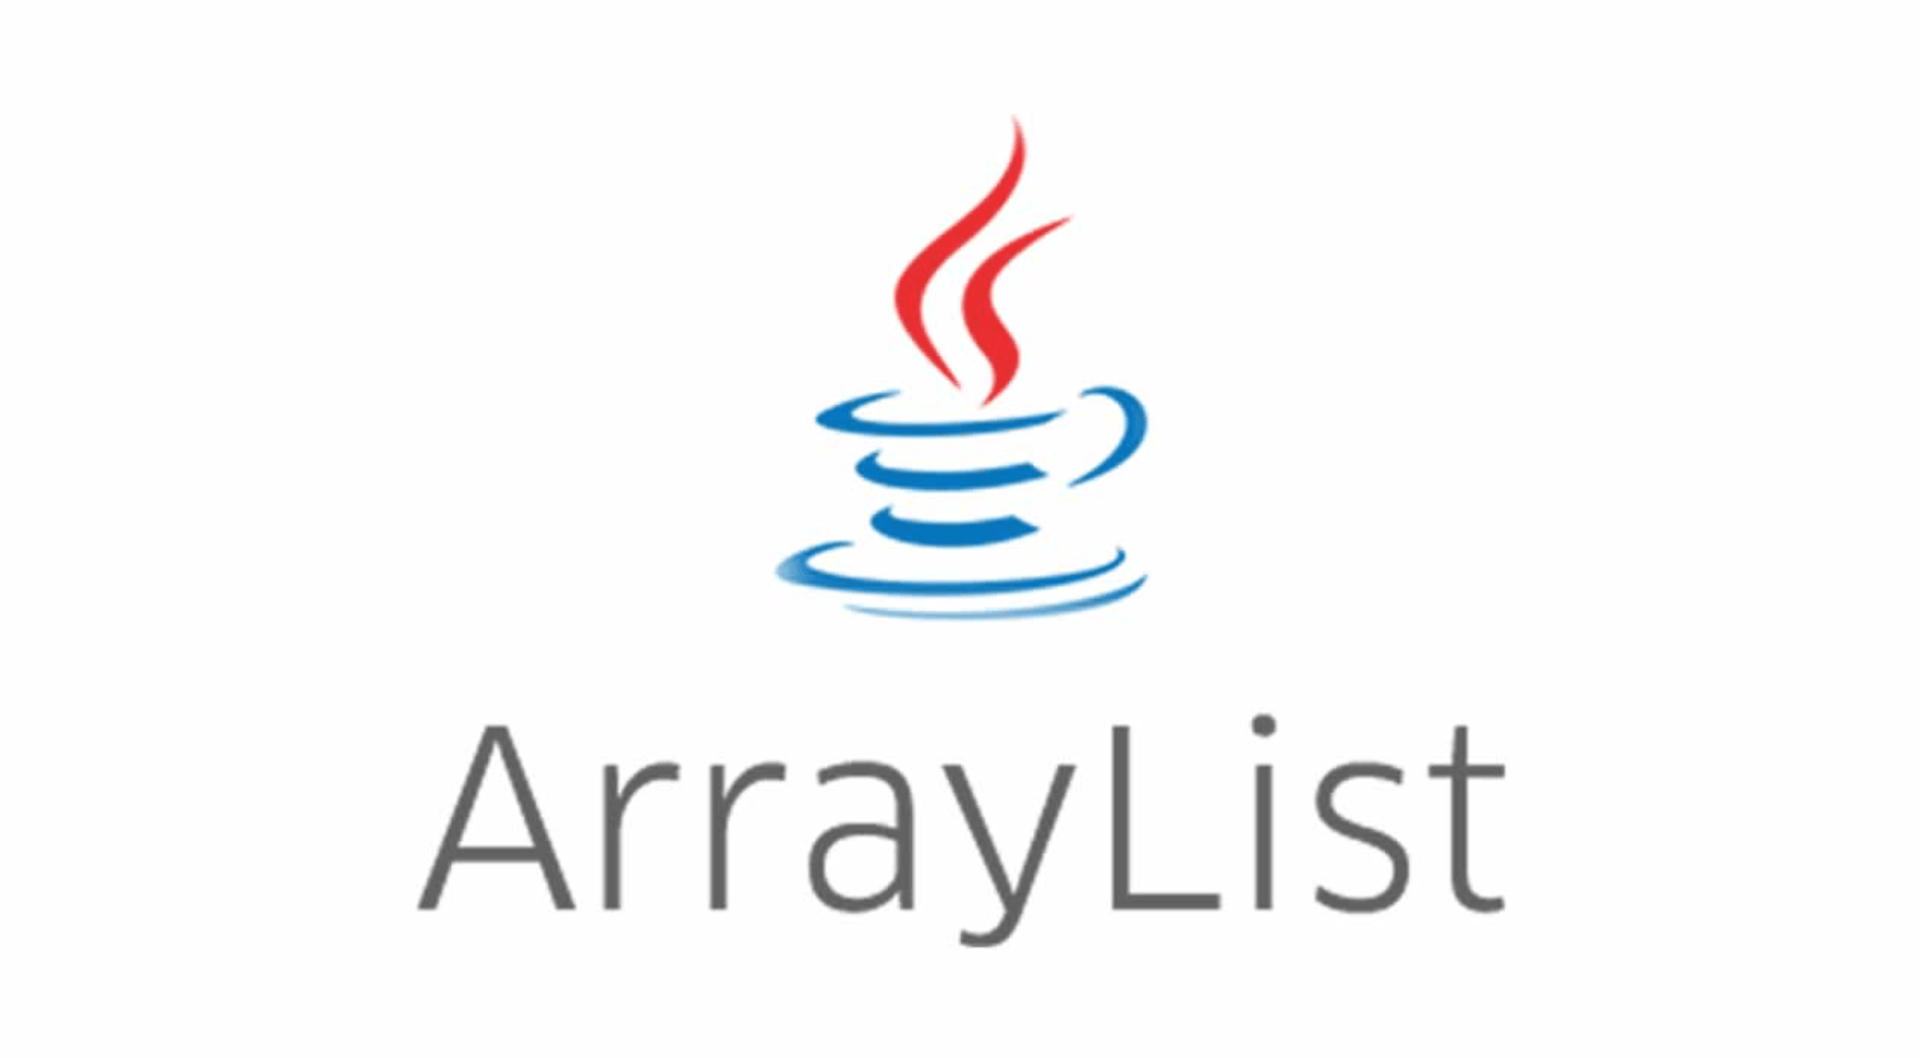 new ArrayList<>() vs Arrays.asList()